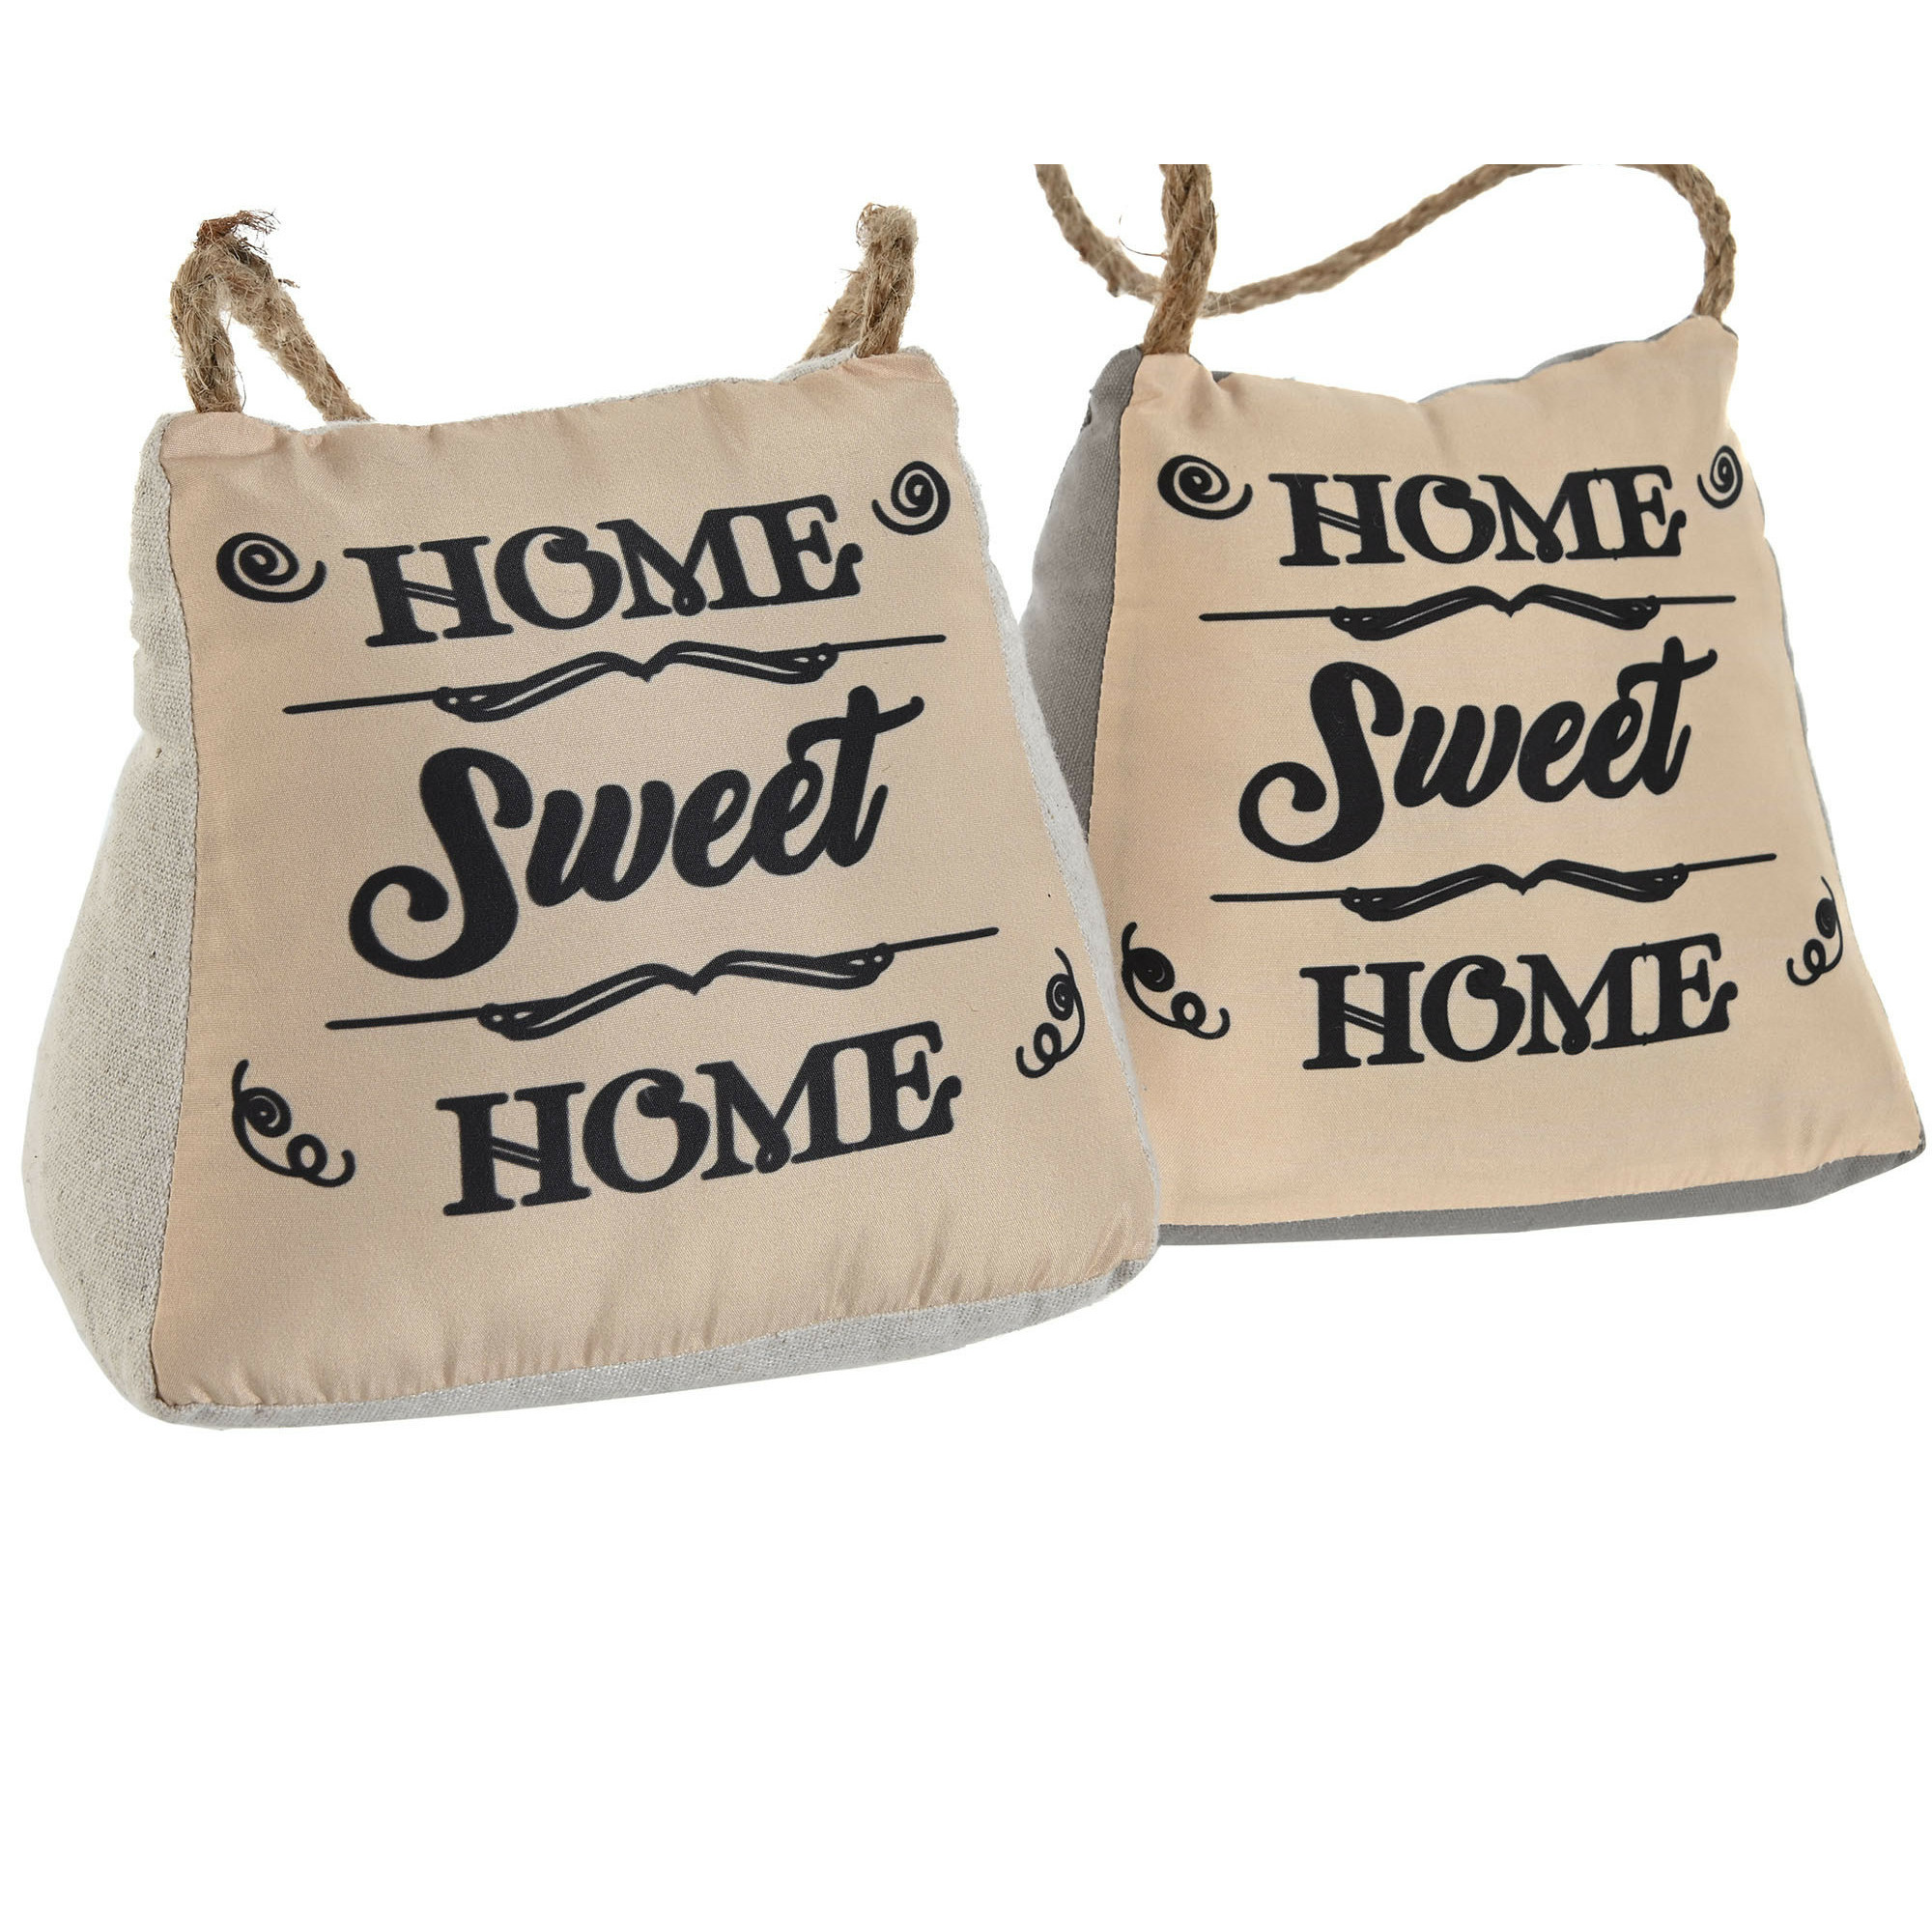 Items Deurstopper Lofty - 2x - 1 kilo - jute/grijs - polyester en zand - 17 x 15 cm - Home Sweet Home -